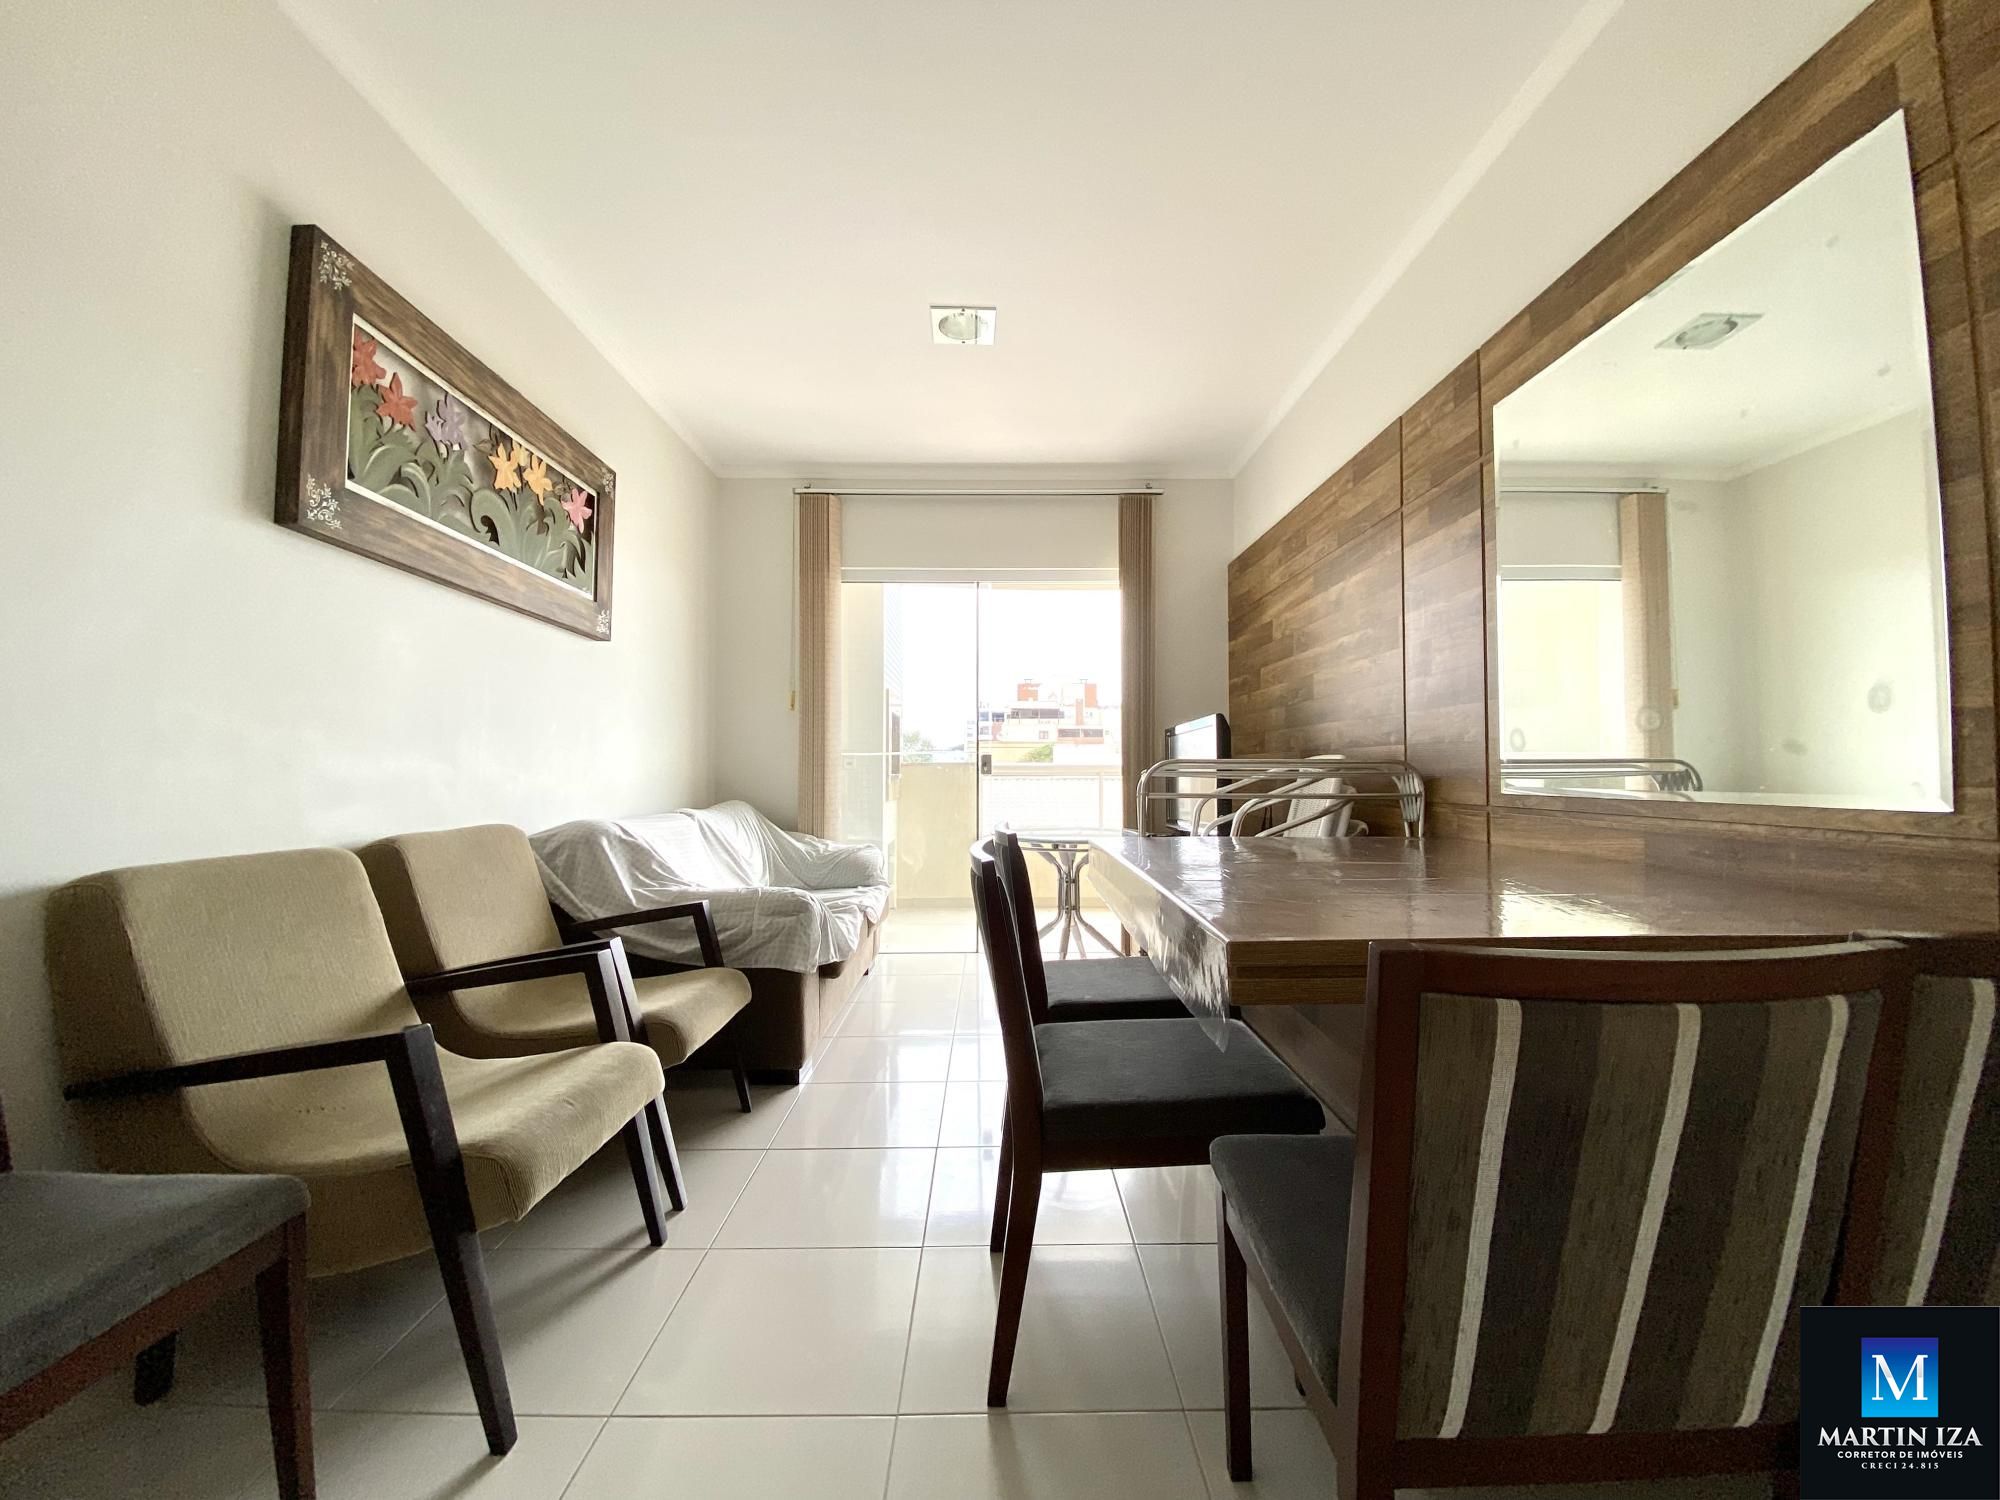 Apartamento com 3 Dormitórios para alugar, 100 m² por R$ 500,00